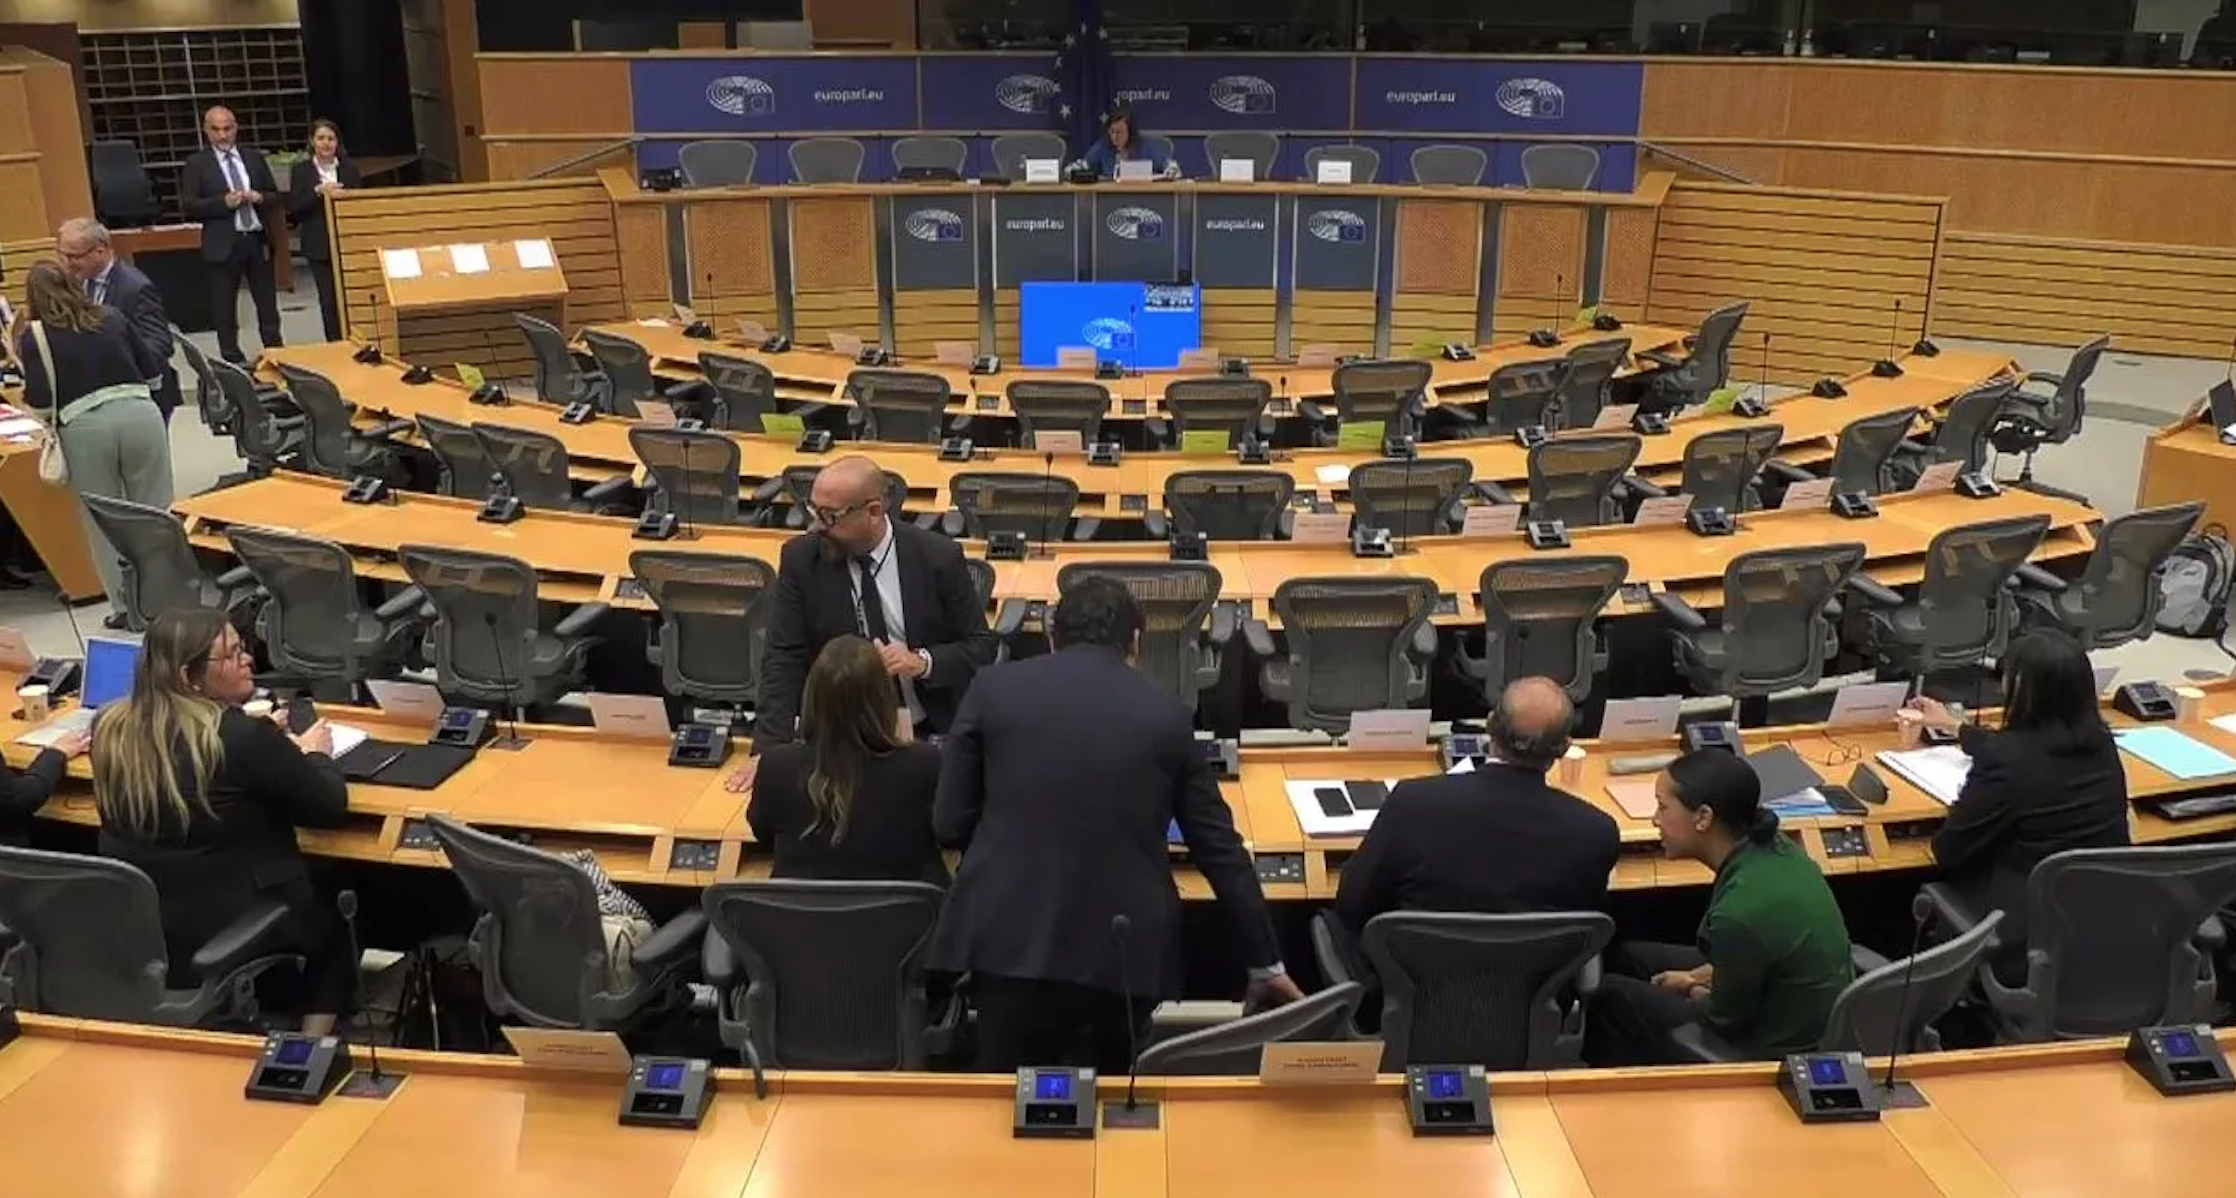 Diputados del Parlamento Europeo evalúan proceso electoral y situación en Guatemala